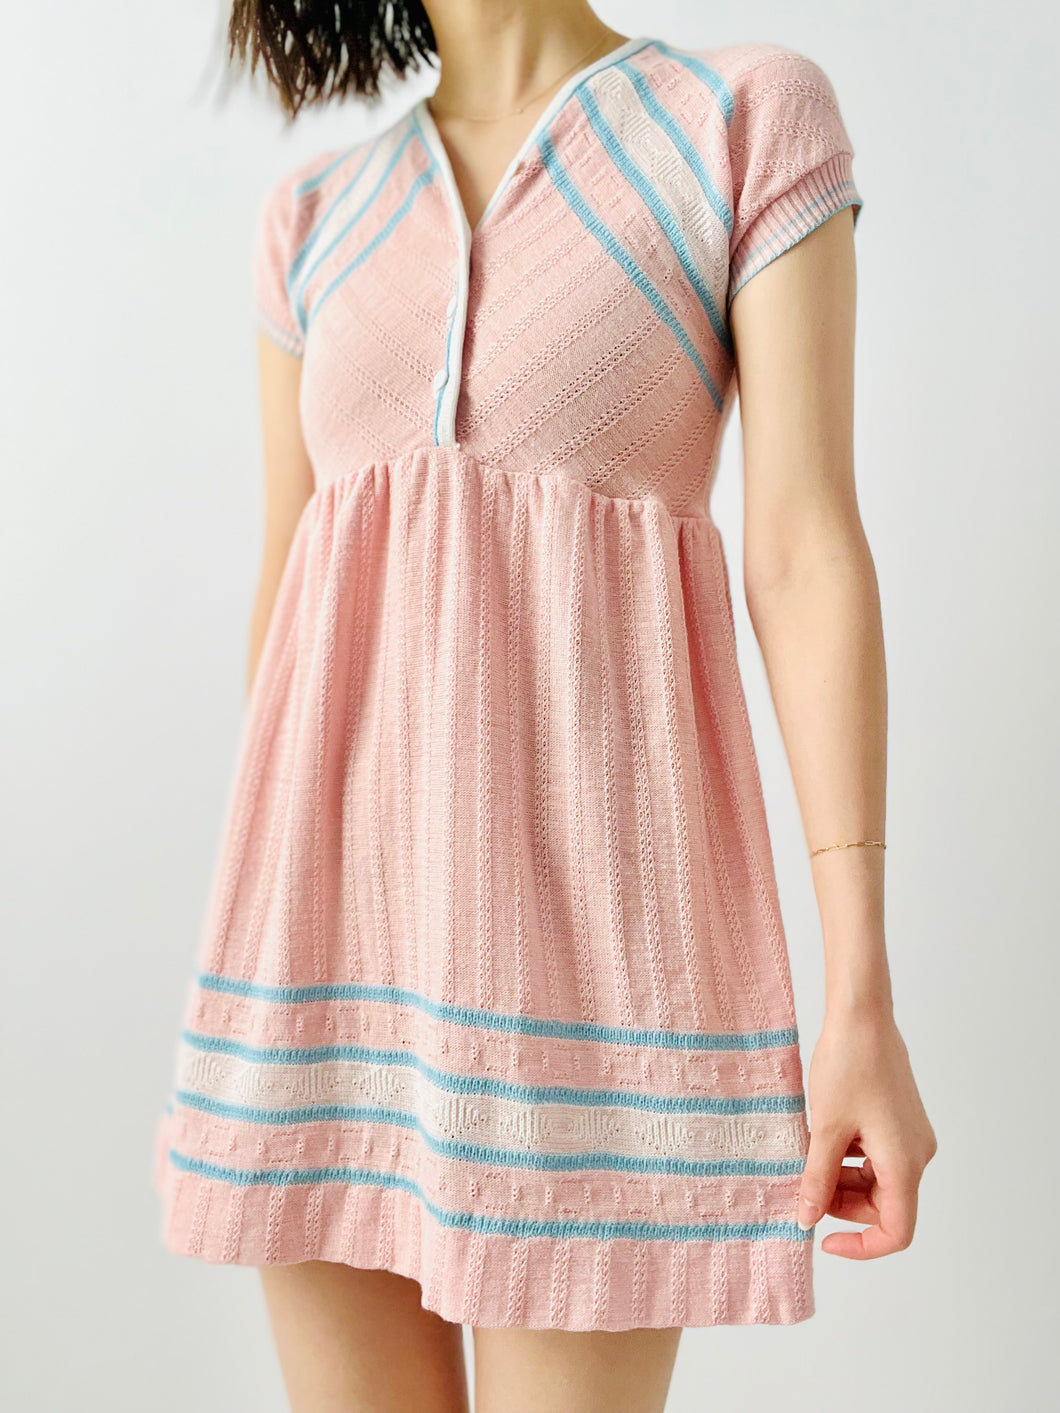 Vintage candy pink knit dress